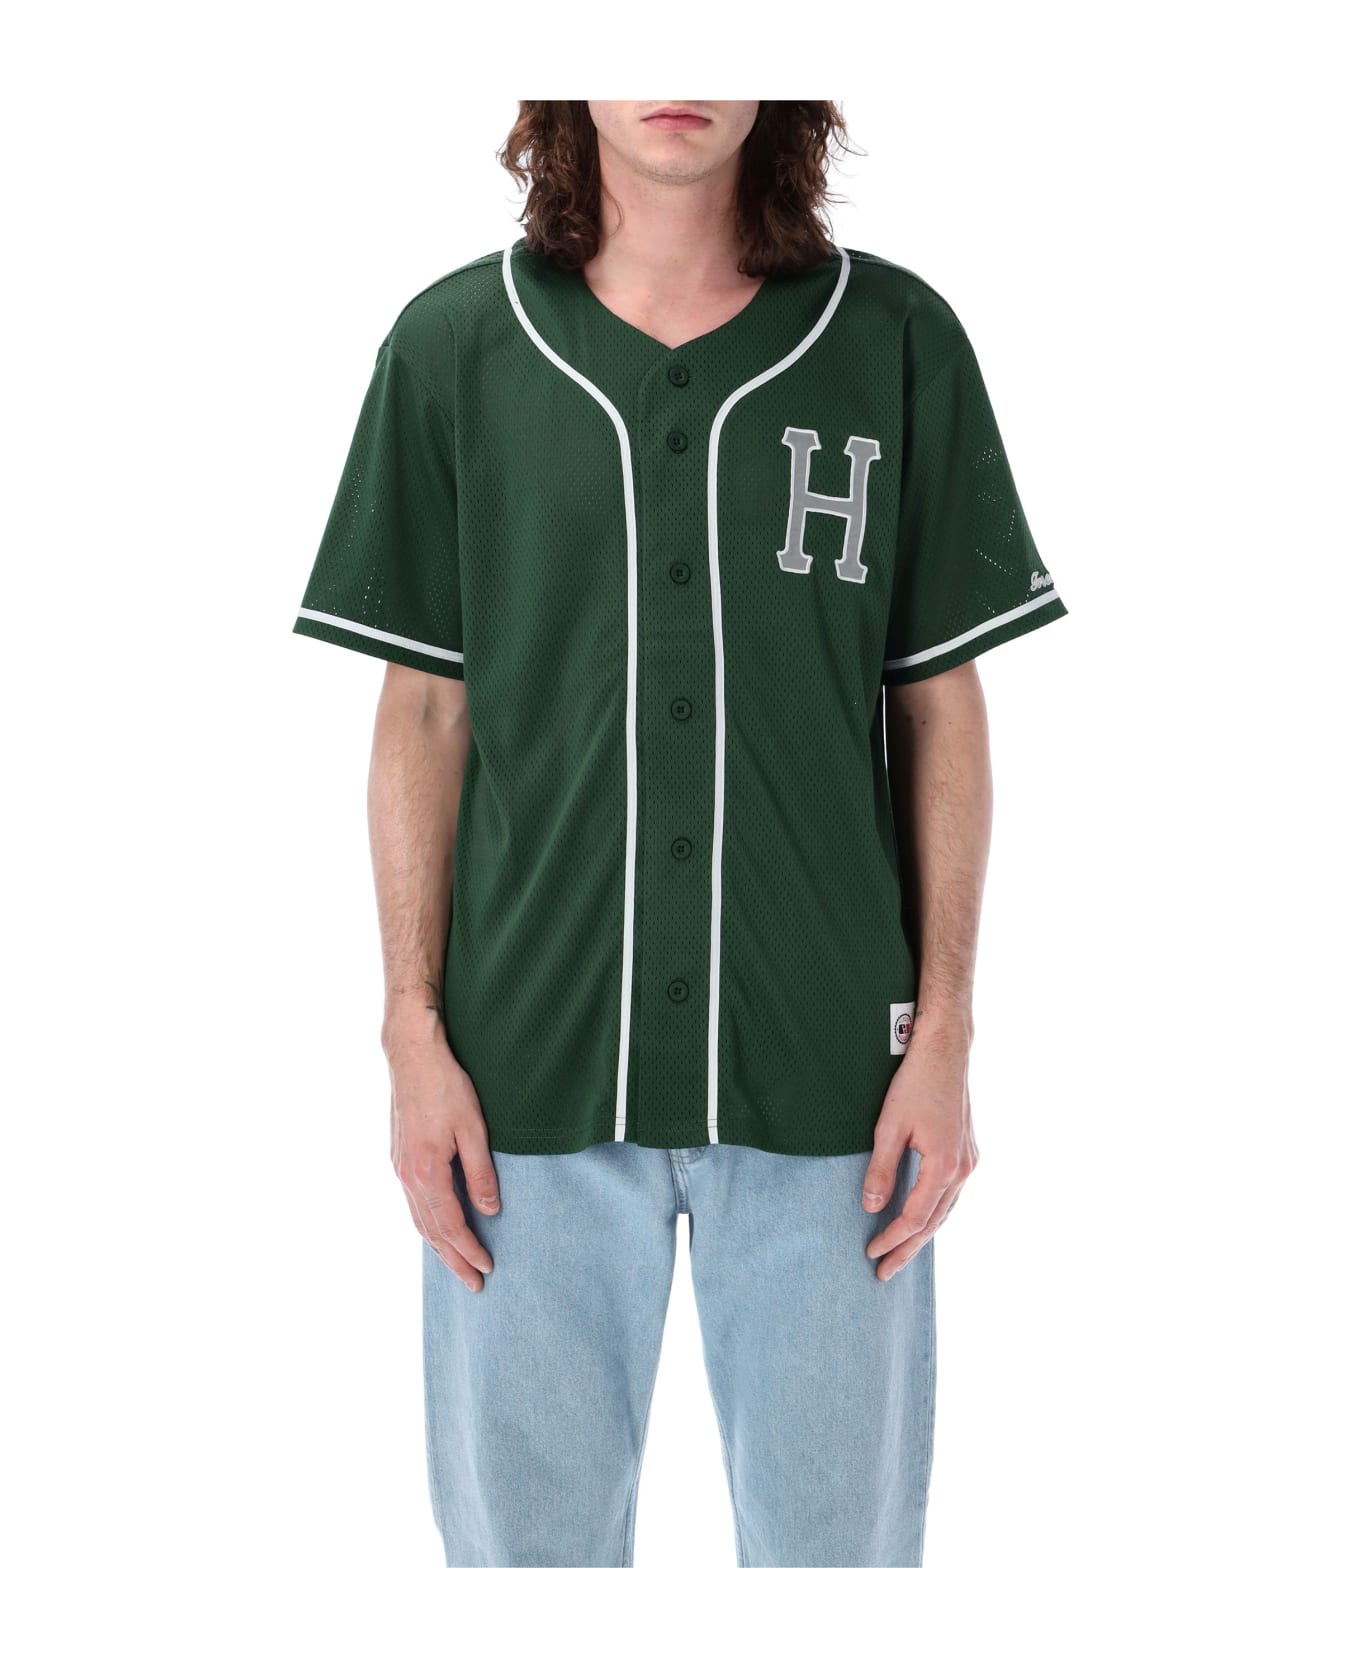 HUF Baseball Mesh Shirt - PINE シャツ